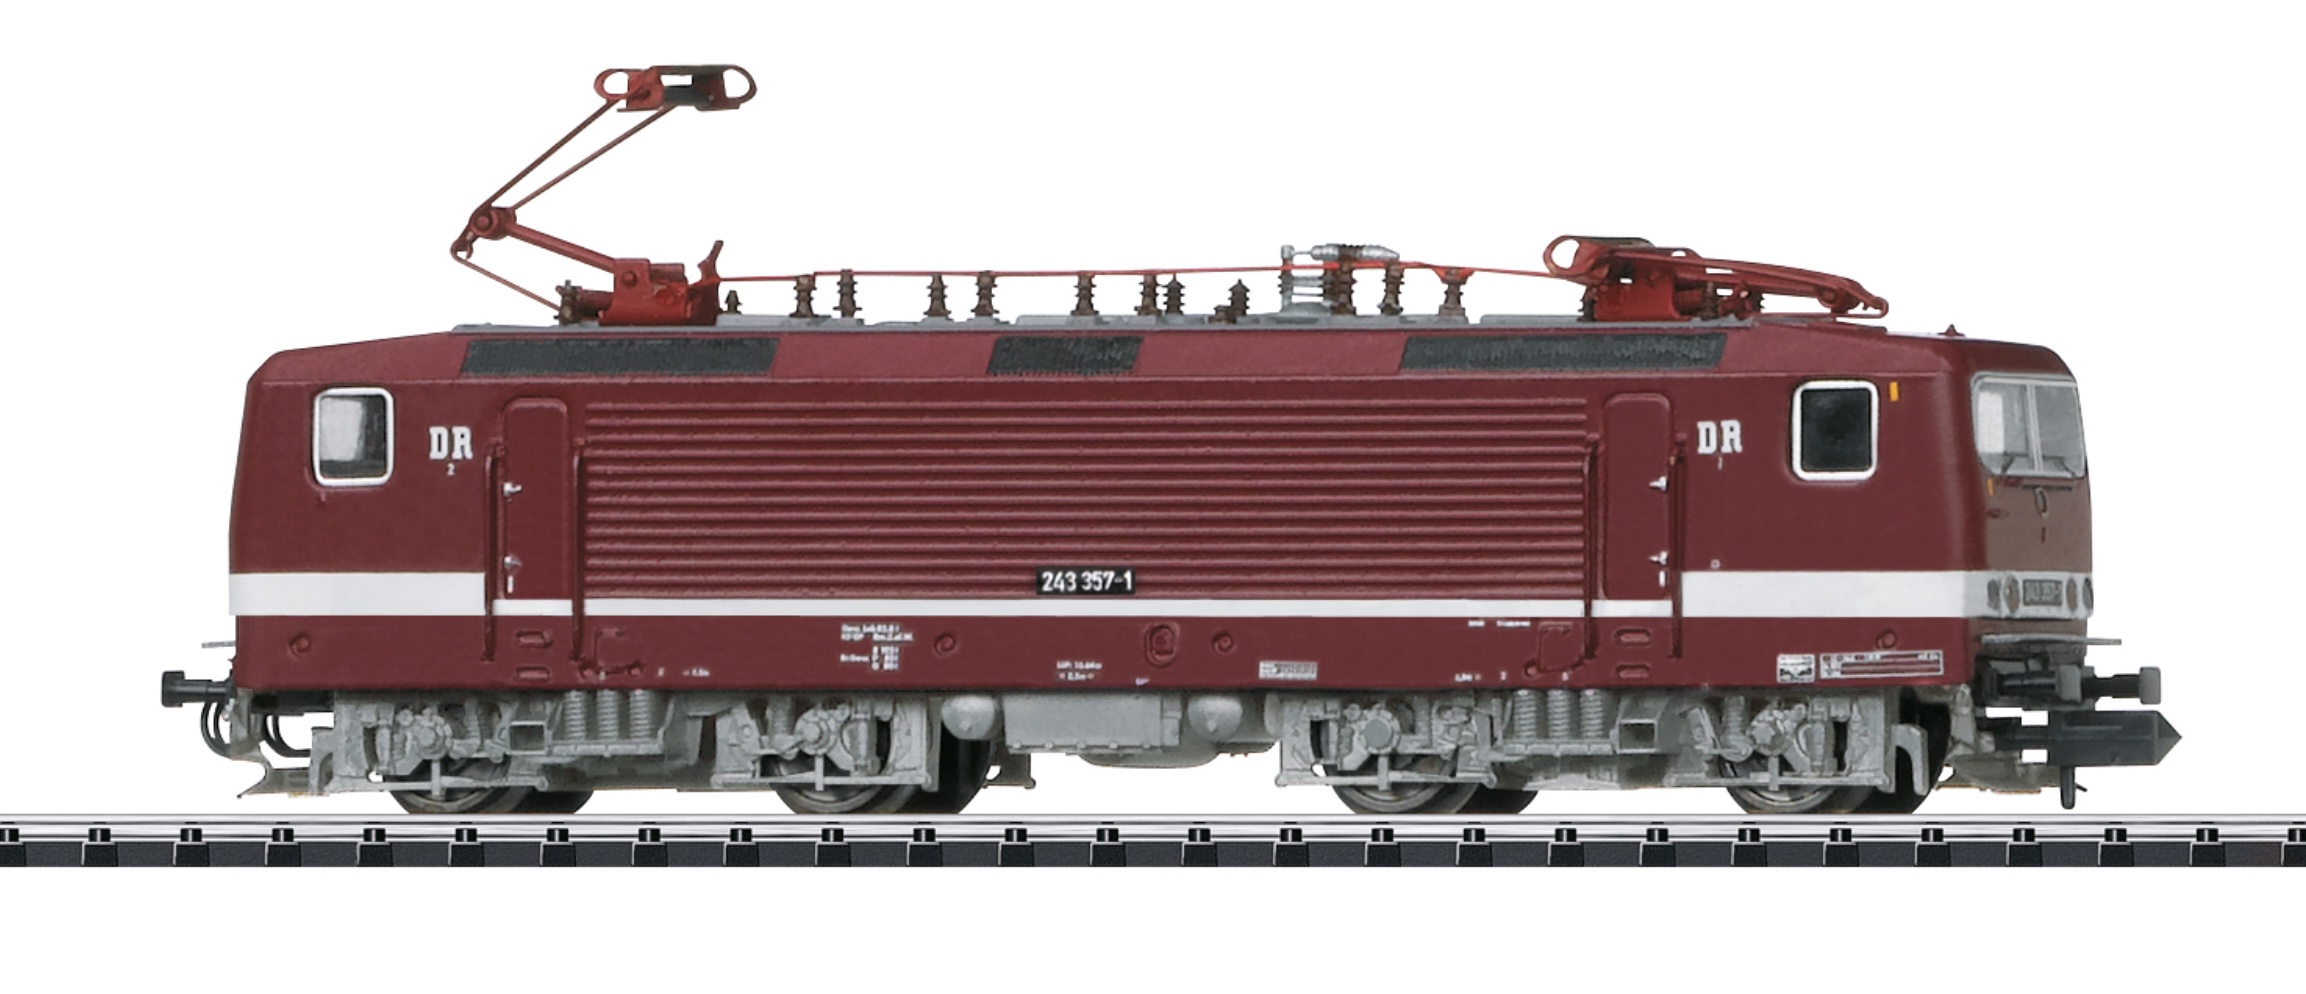 N Scale - Minitrix - 16433 - Locomotive, Electric, Class 243, Epoch IV - Deutsche Reichsbahn - 243 357-1